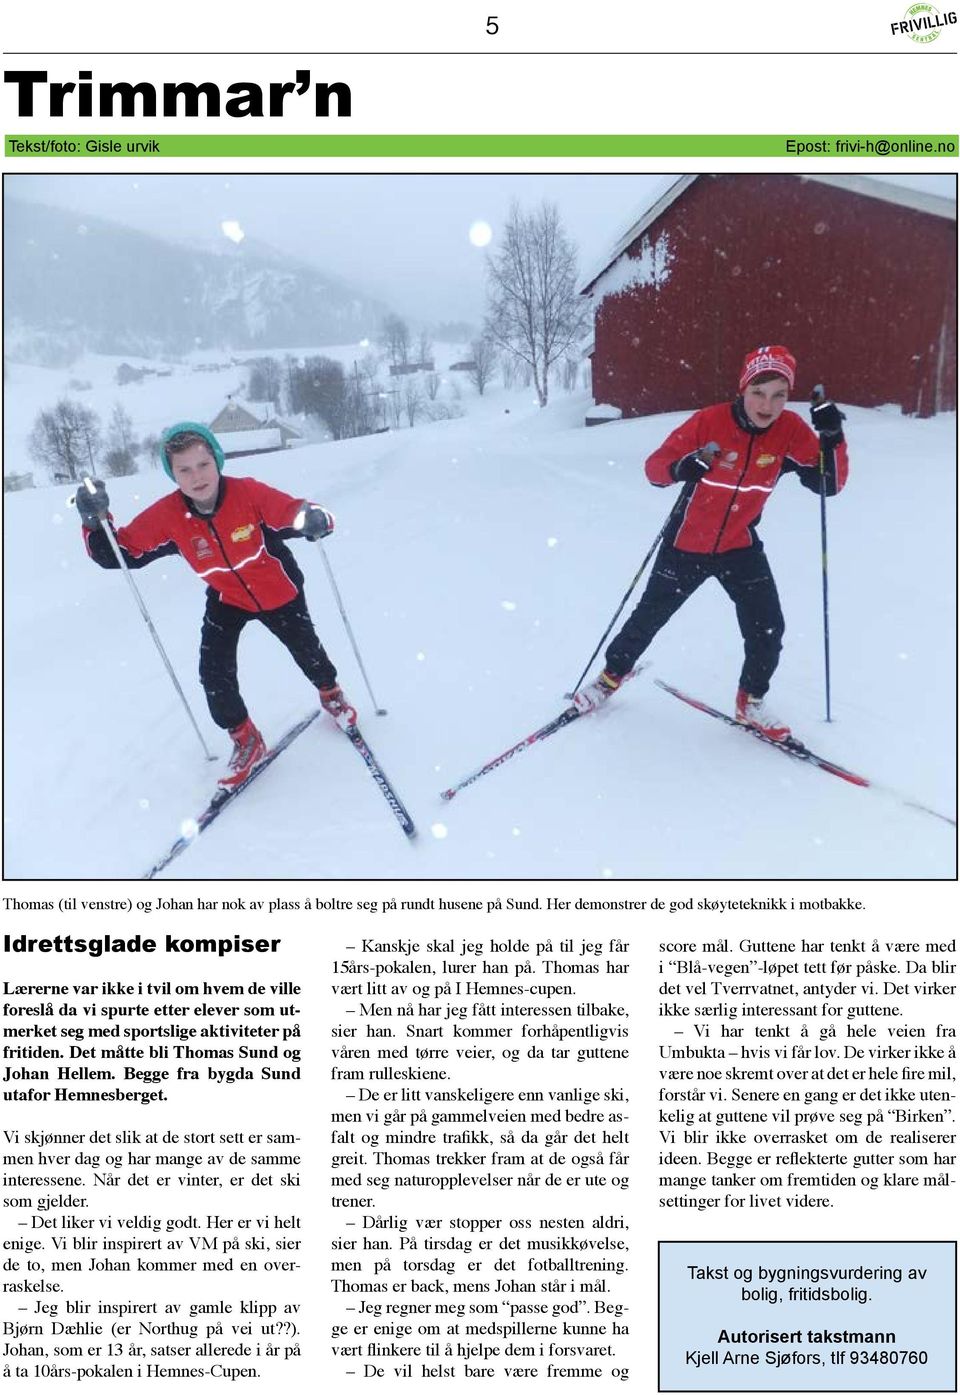 Begge fra bygda Sund utafor Hemnesberget. Vi skjønner det slik at de stort sett er sammen hver dag og har mange av de samme interessene. Når det er vinter, er det ski som gjelder.